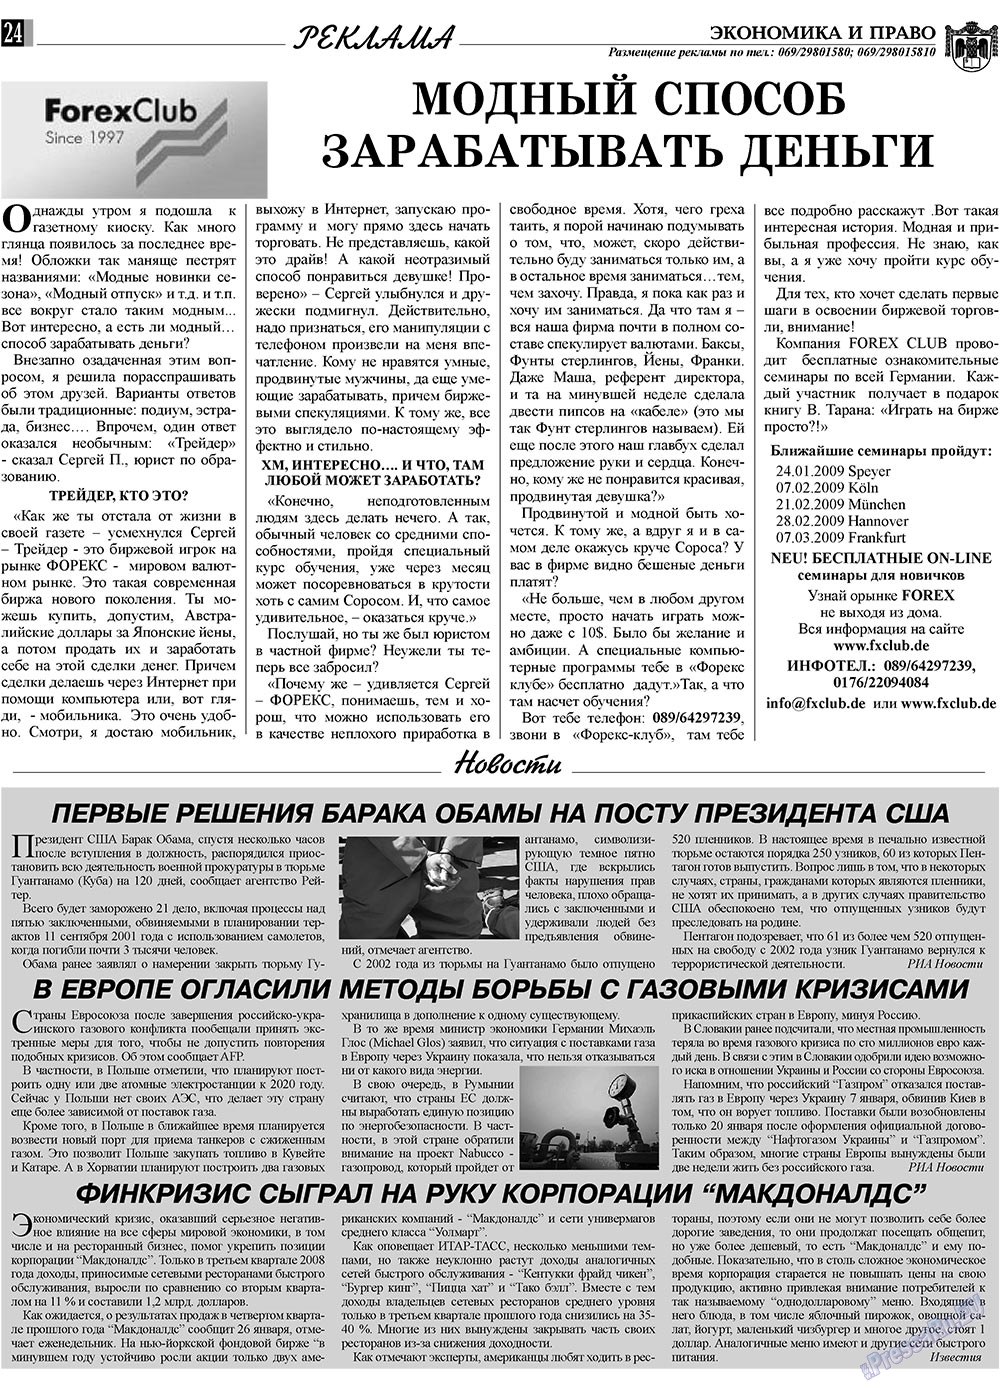 Экономика и право, газета. 2009 №2 стр.24